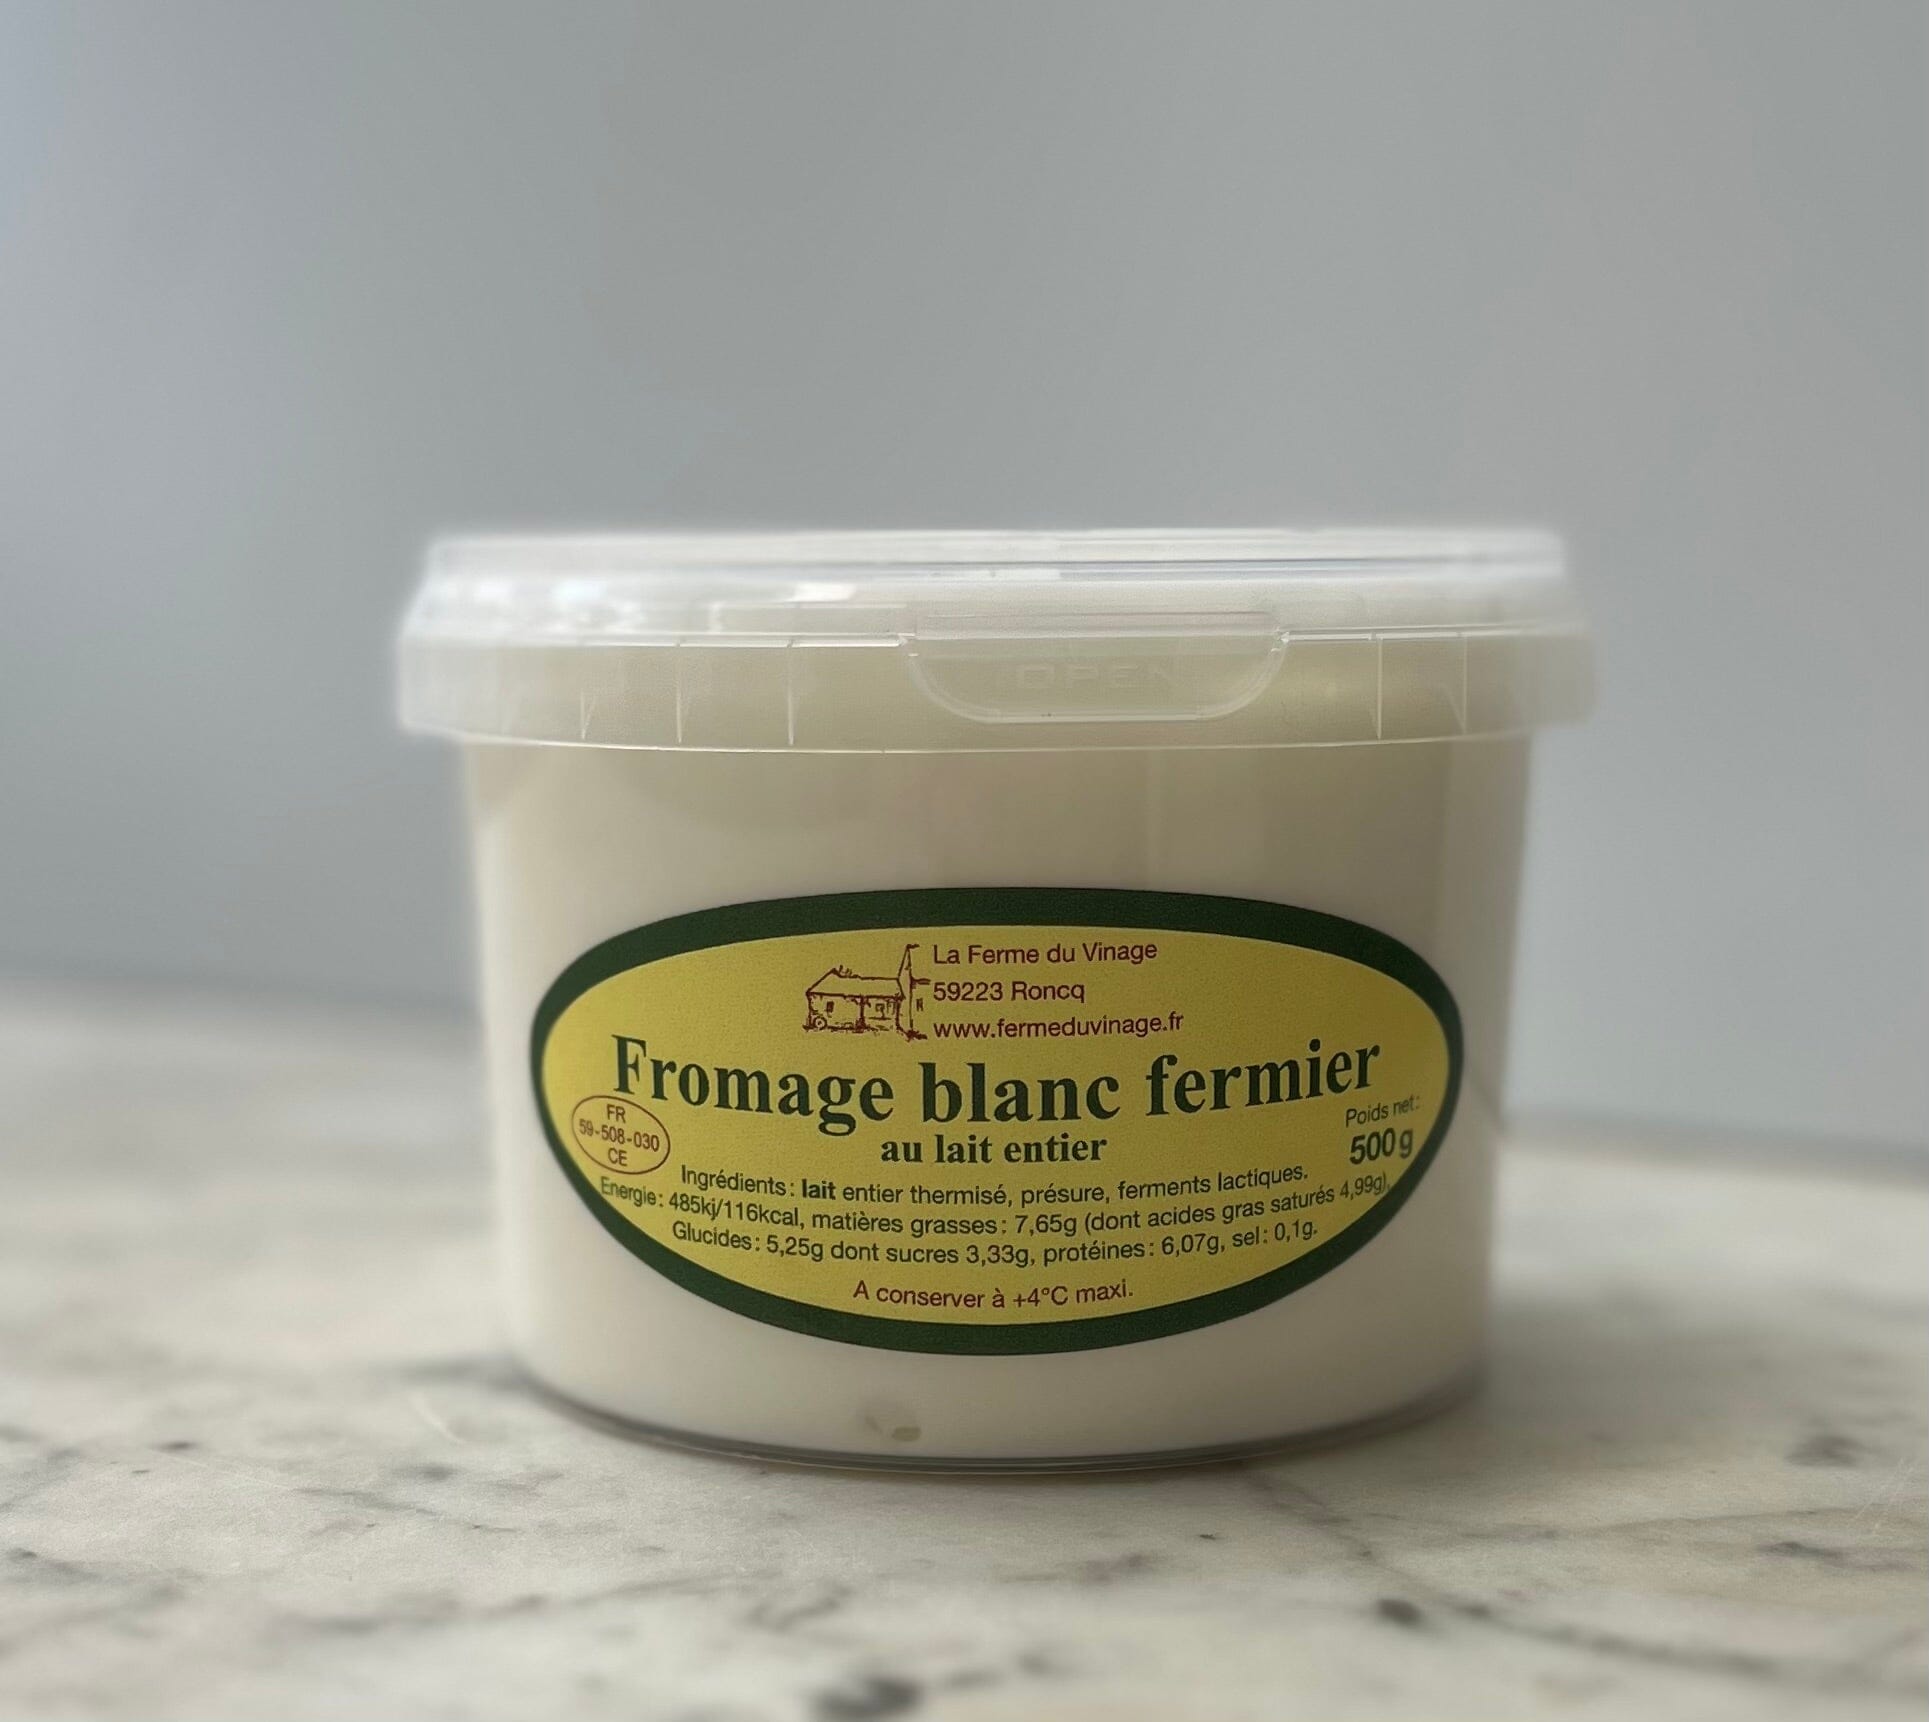 Le fromage blanc du vinage (500g) Crèmerie Géraldine - La Ferme du Vinage - Roncq